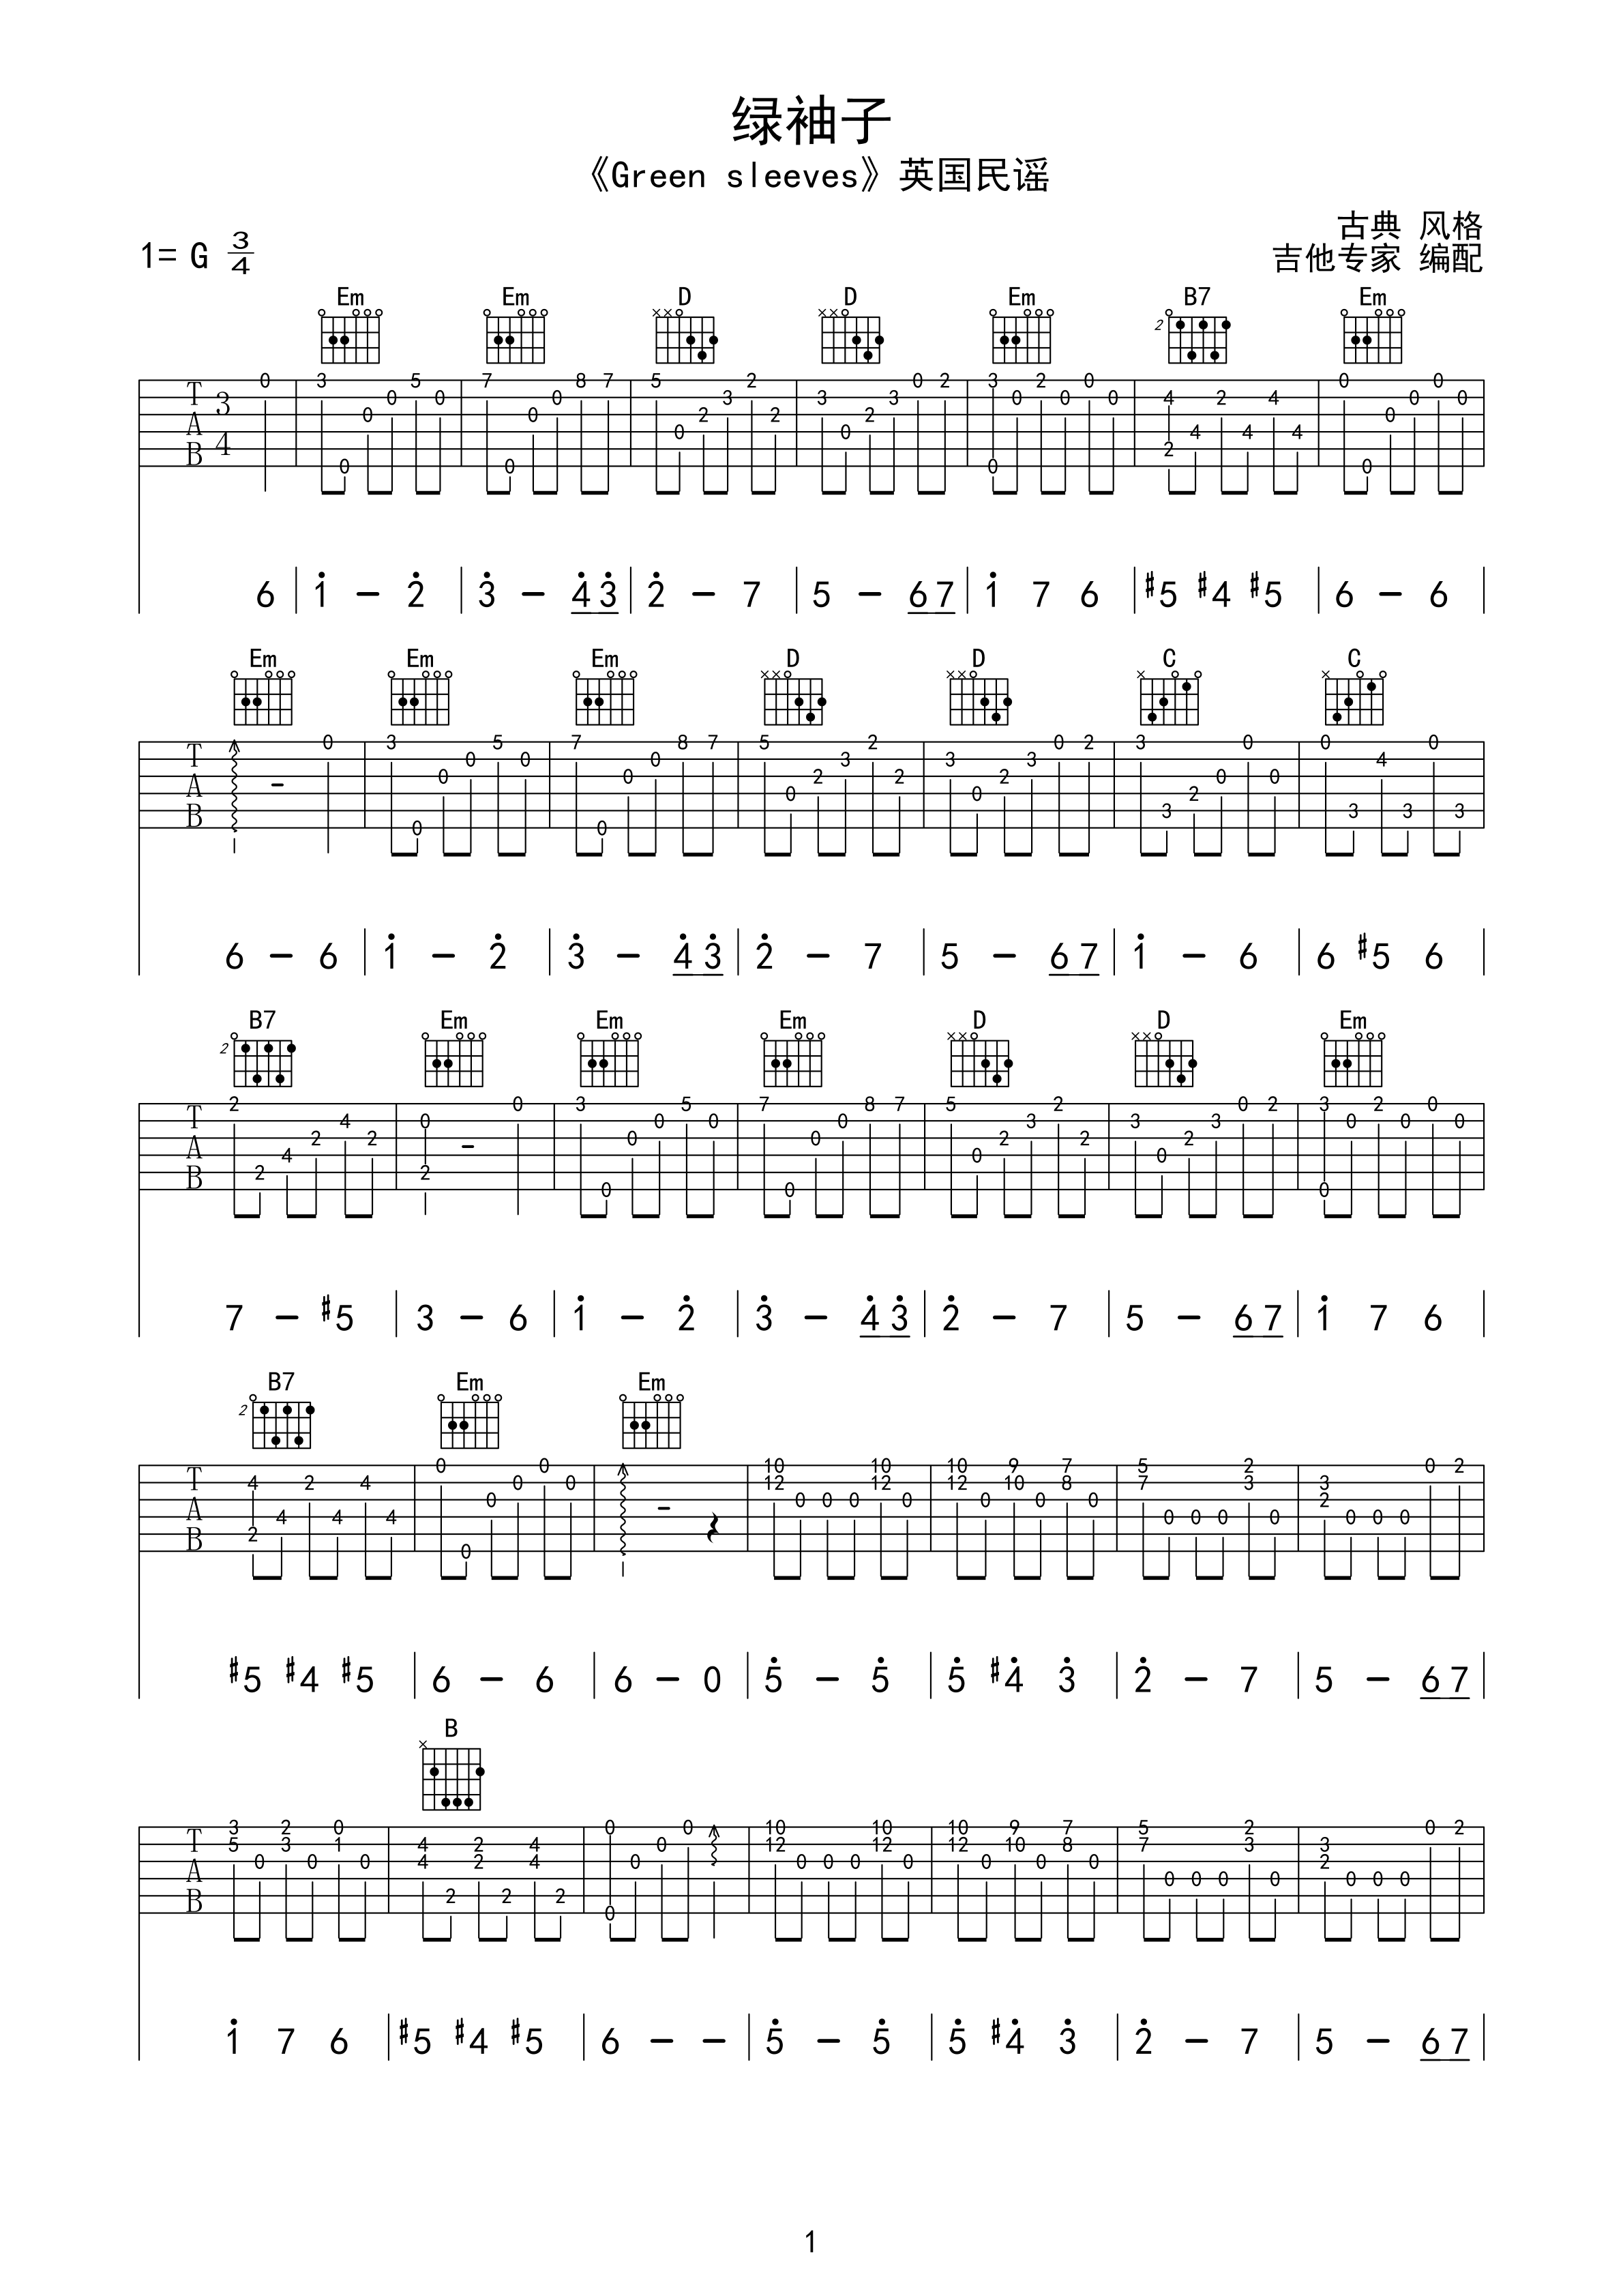 古典吉他名曲谱《绿袖子》英国民谣-古典吉他谱 - 乐器学习网